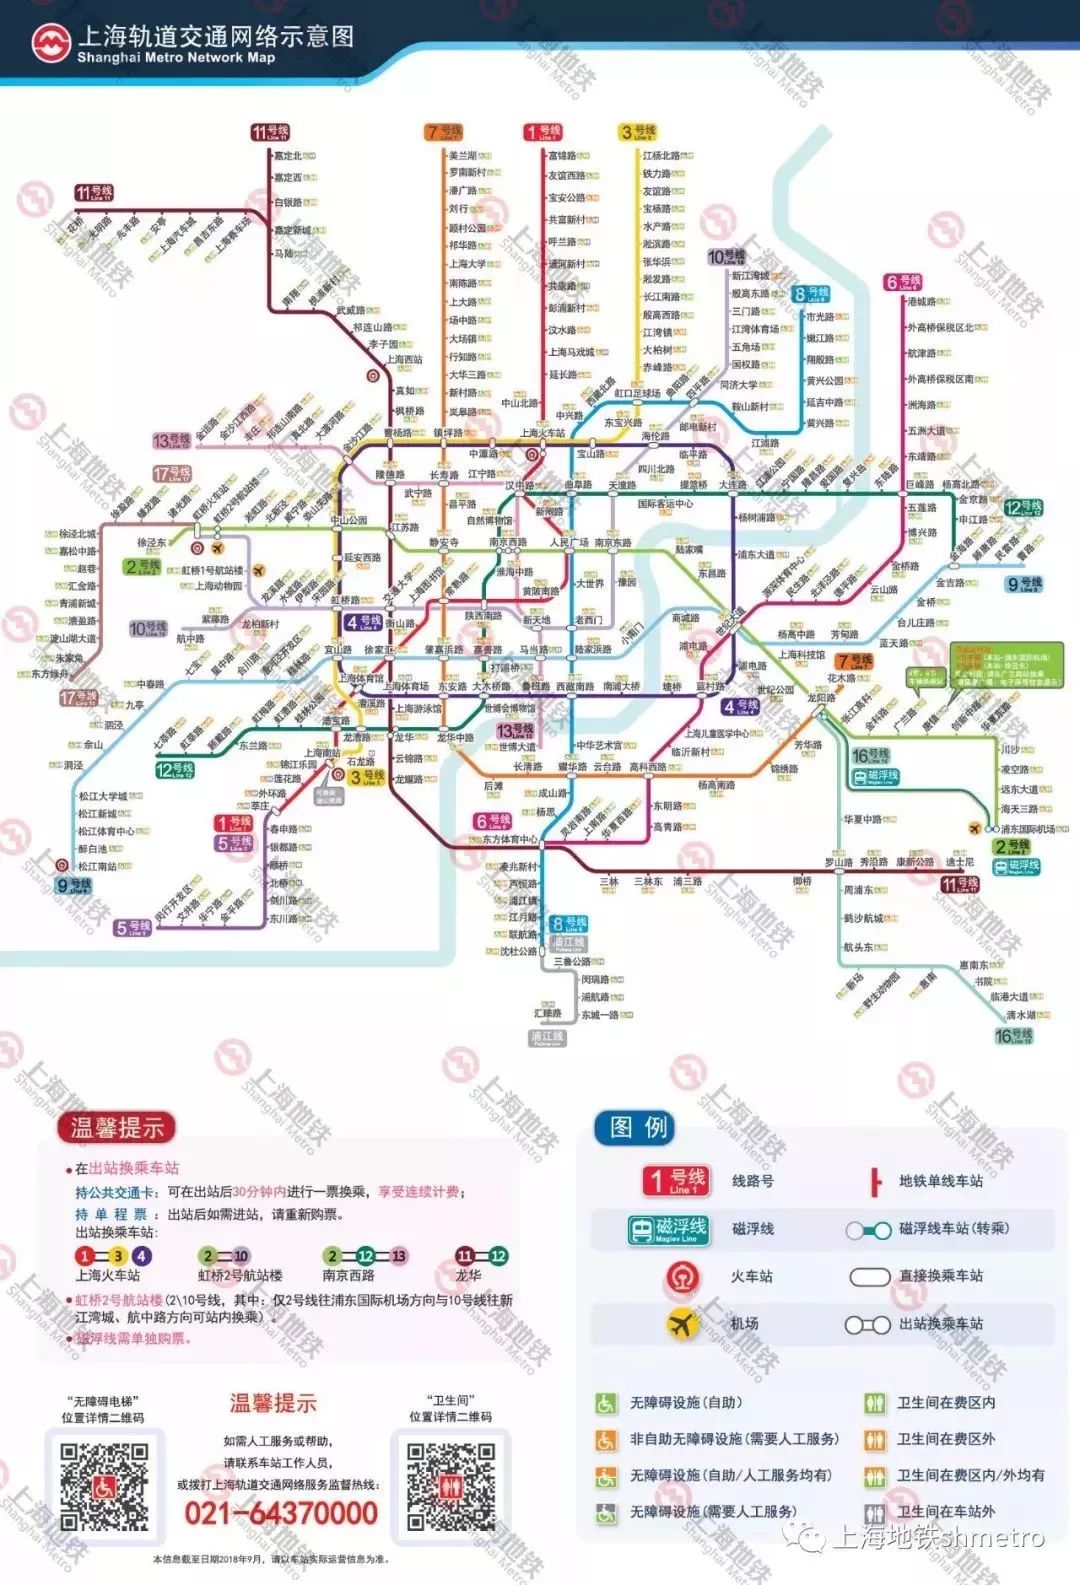 2025)项目实施后, 轨道交通网络规模将达到 24条线路, 上海地铁已